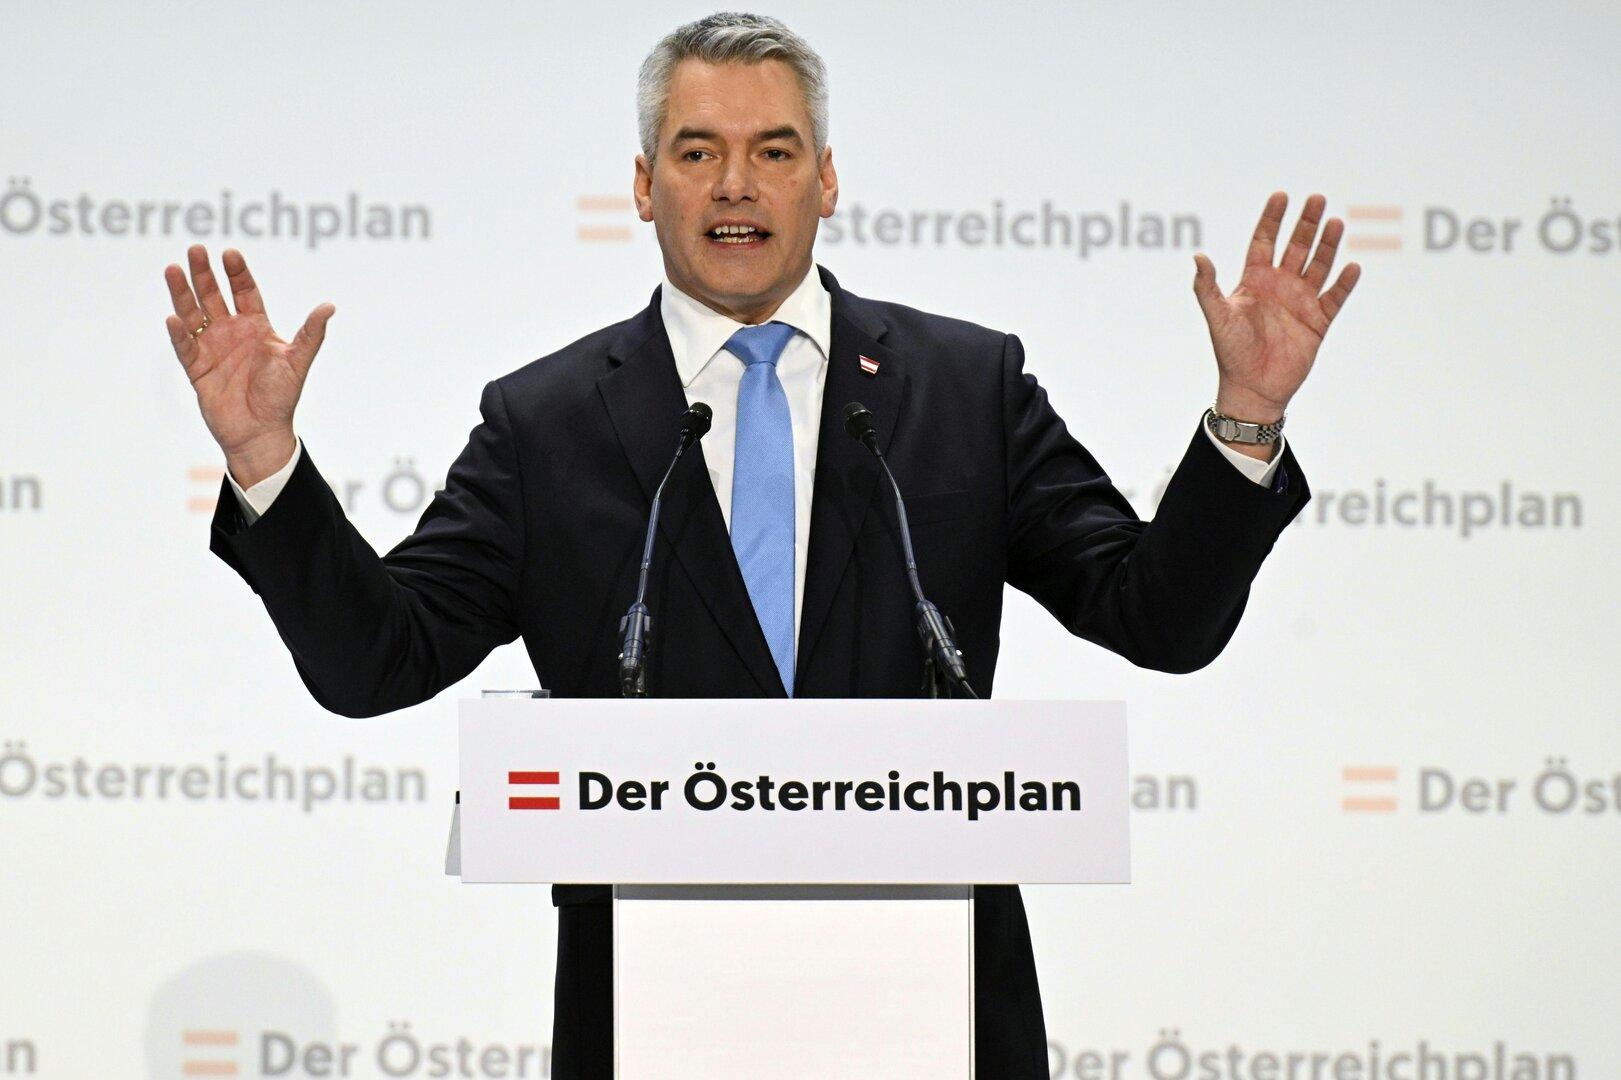 Österreich-Plan: Nach der Kanzler-Rede kommt die Tour